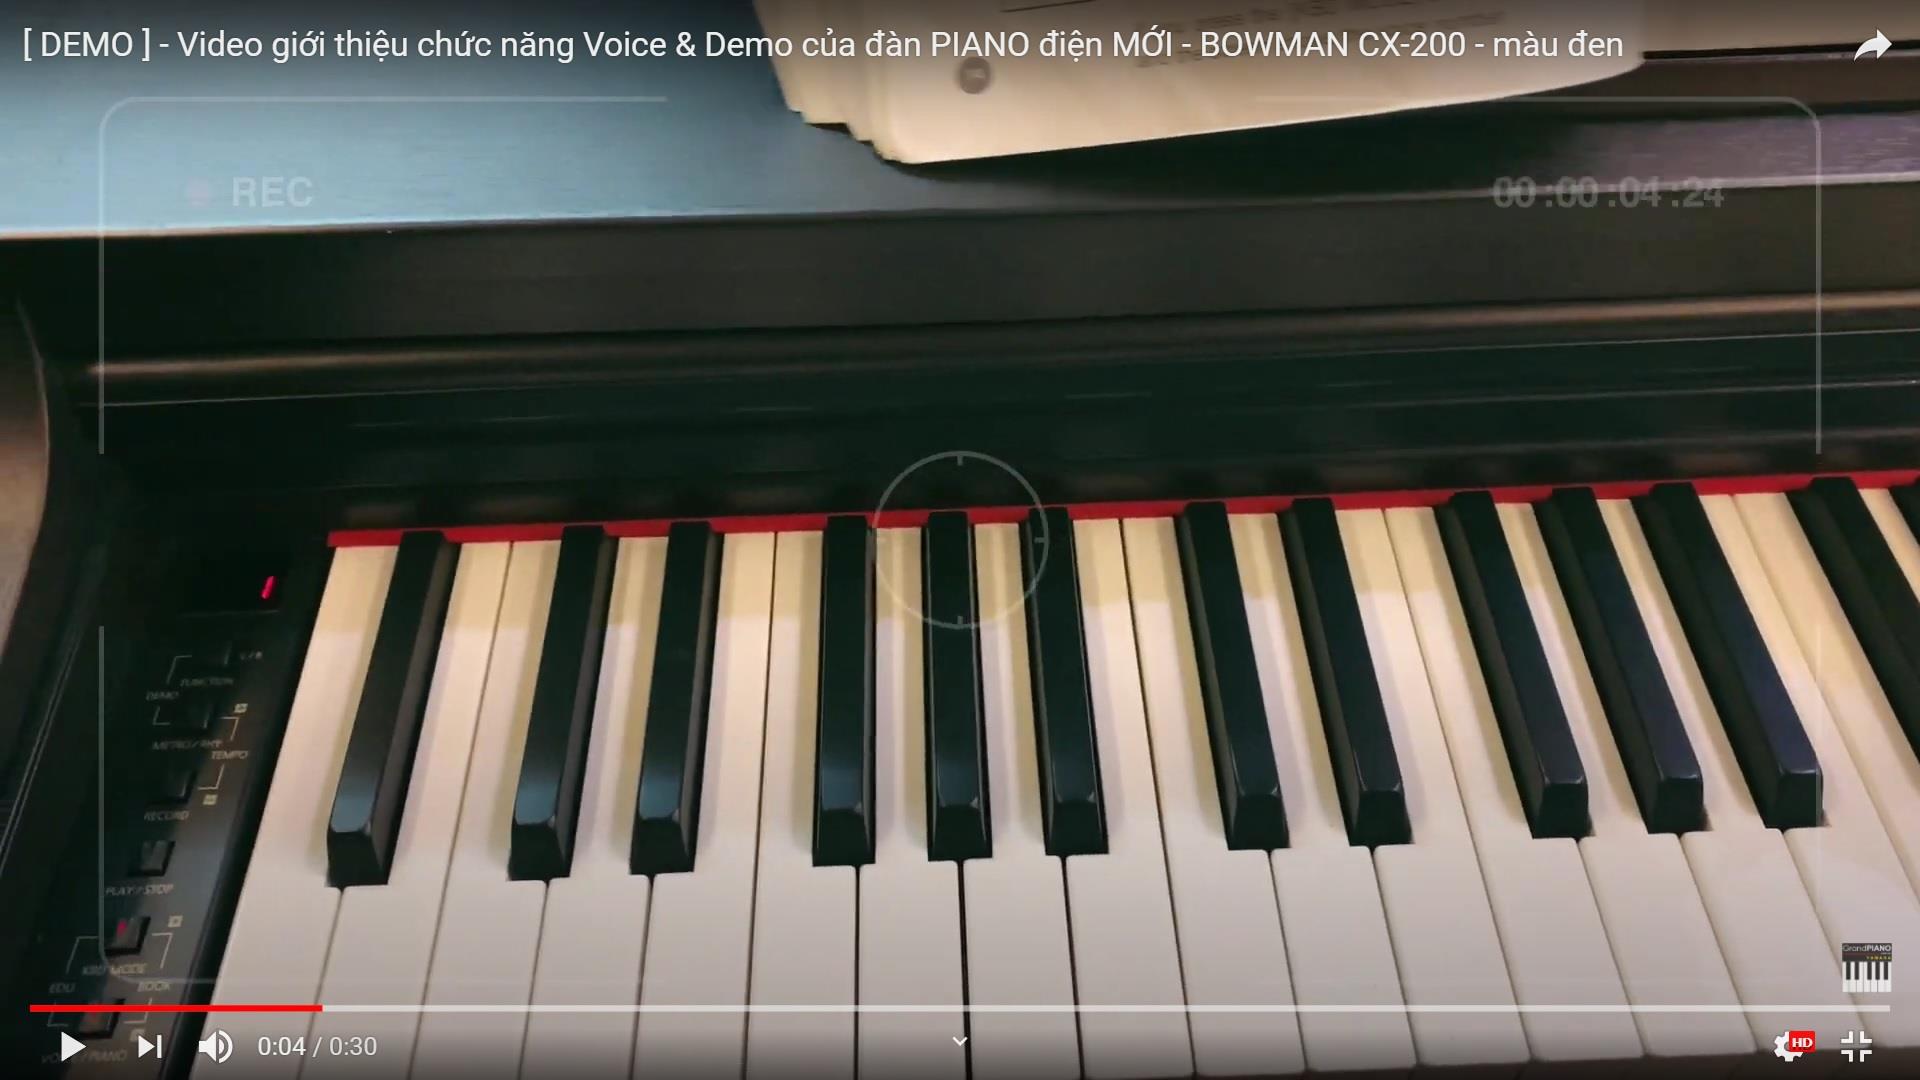 Video giới thiệu chức năng Voice & Demo của đàn PIANO điện MỚI - BOWMAN CX-200 - màu đen